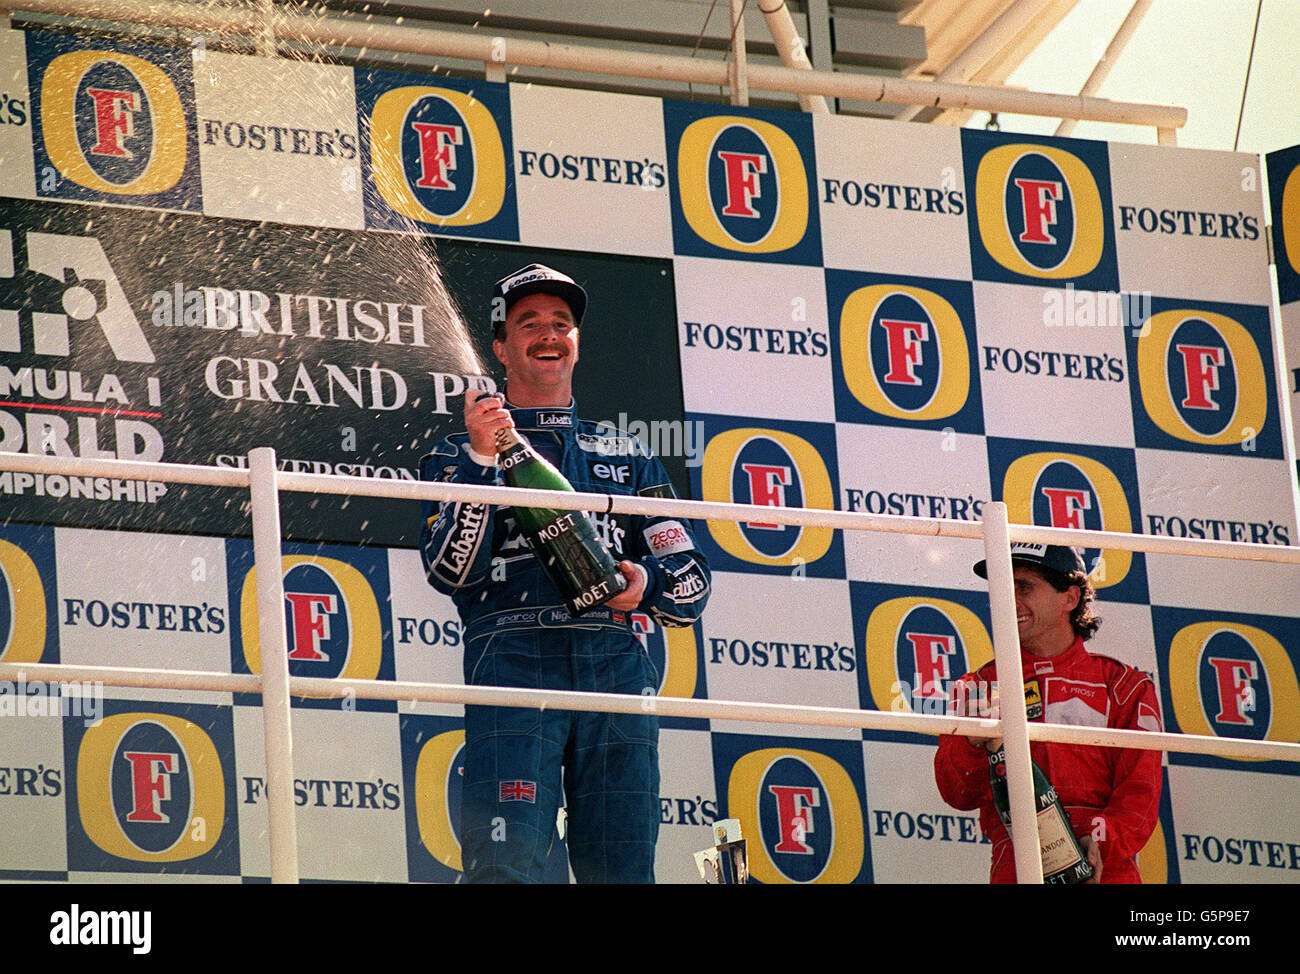 14 juillet - ce jour en 1991, le pilote britannique de F1 Nigel Mansell remporte le Grand Prix britannique de Silverstone. Nigel Mansell est à la tribune après avoir remporté le Grand Prix britannique Fosters à Silverstone. Banque D'Images